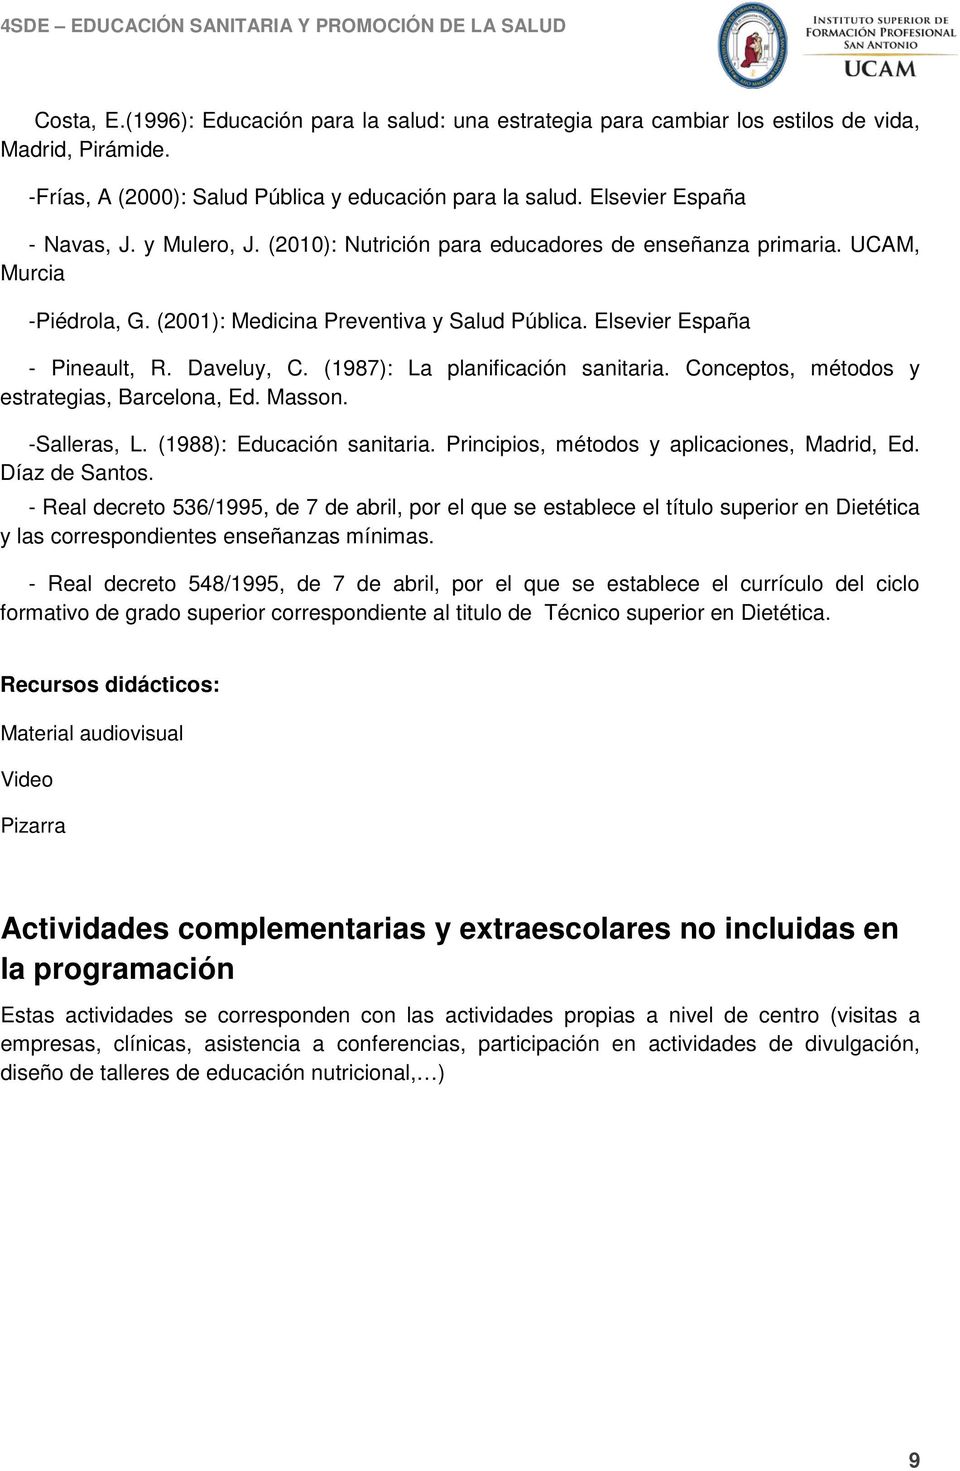 (1987): La planificación sanitaria. Conceptos, métodos y estrategias, Barcelona, Ed. Masson. -Salleras, L. (1988): Educación sanitaria. Principios, métodos y aplicaciones, Madrid, Ed. Díaz de Santos.